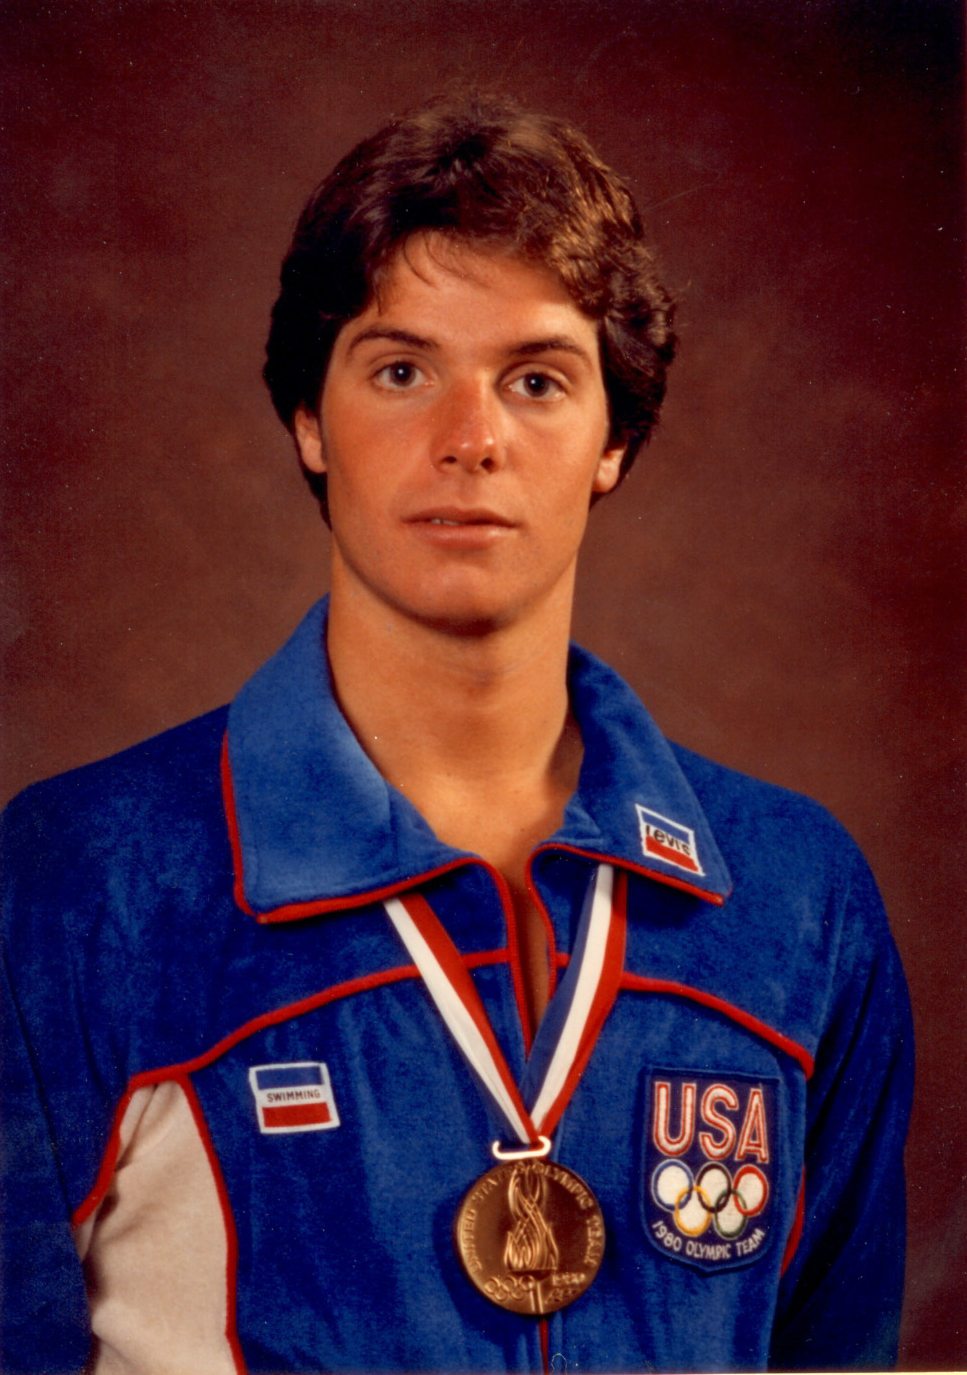 David Sims, 1980 Olympian